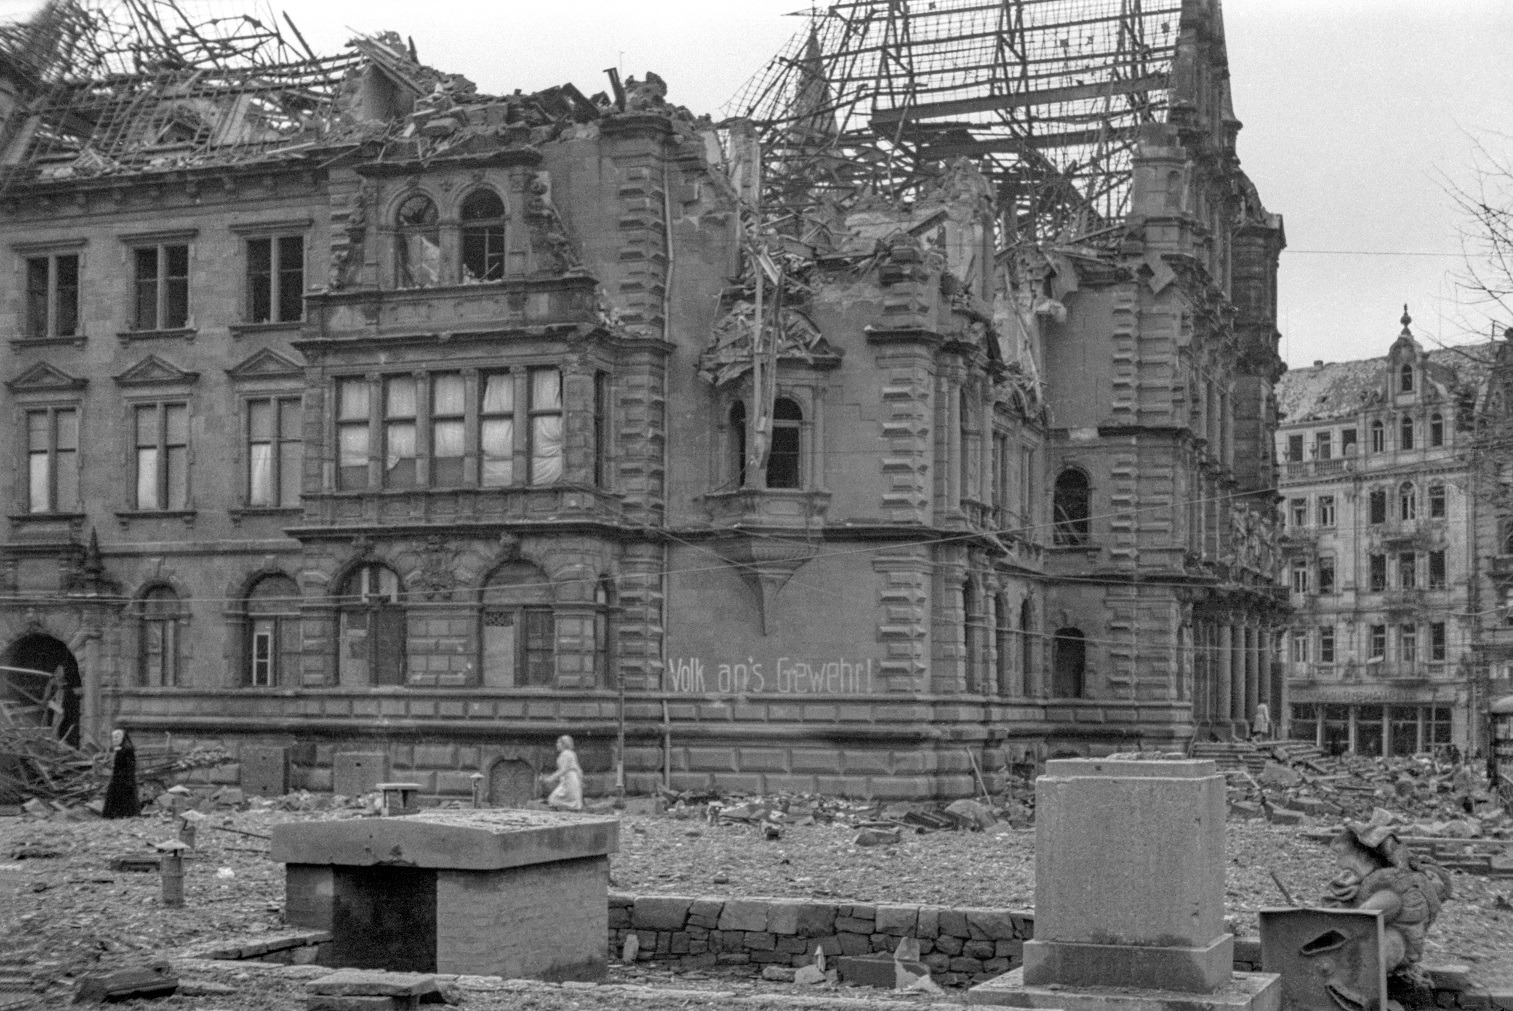 Das beschädigte Wiesbadener Rathaus 1945. Fotograf: Willi Rudolph. StadtA WI, Sammlung Willi Rudolph